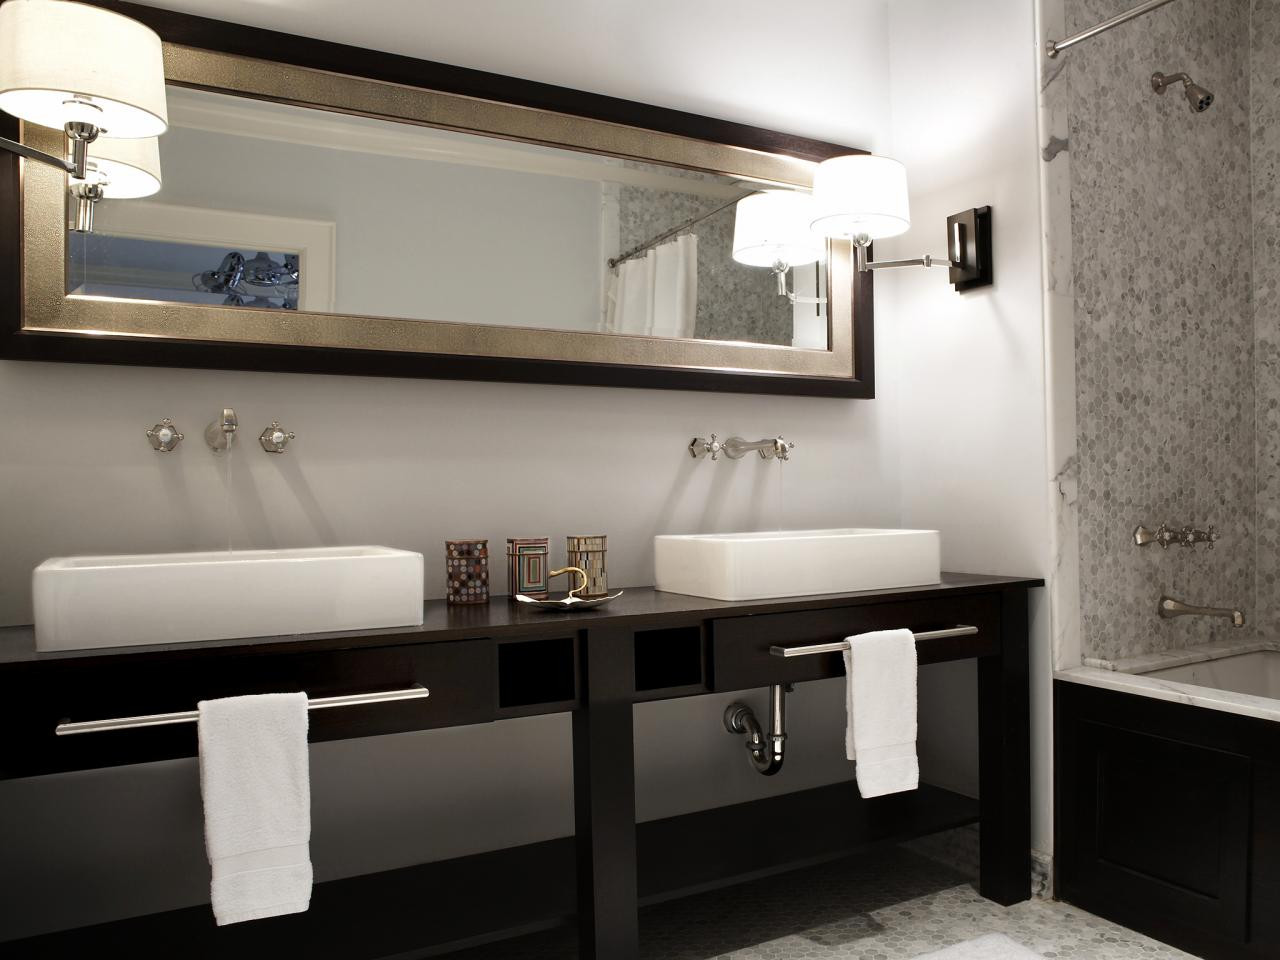 Bathroom Vanity Mirror Cabinet
 Decorative Bathroom Vanity Mirrors in Elegant Bathroom